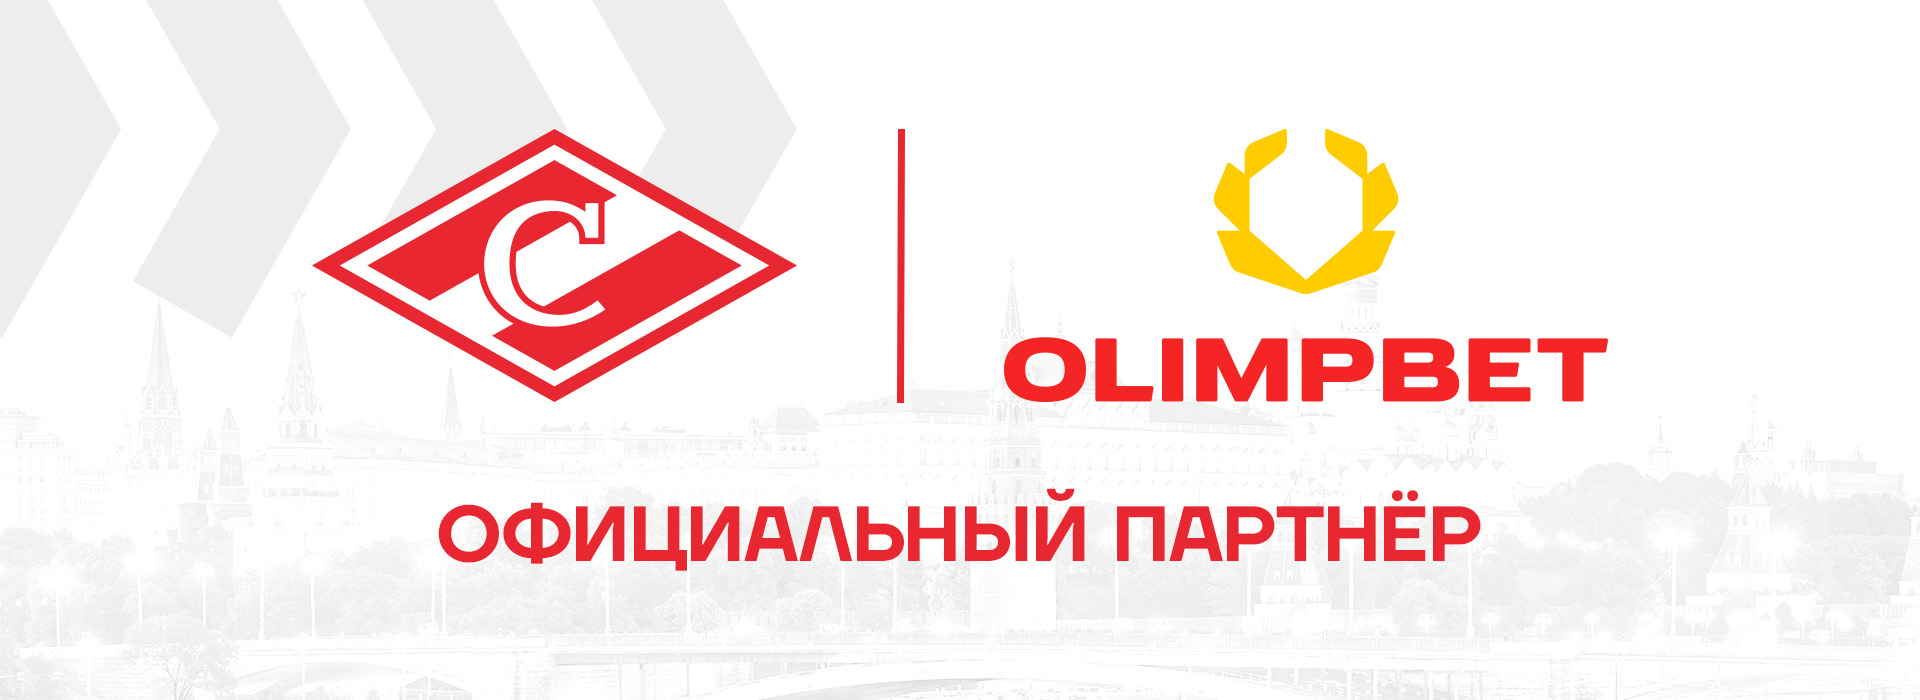 Официальный партнёр ХК «Спартак» – букмекерская компания Olimpbet